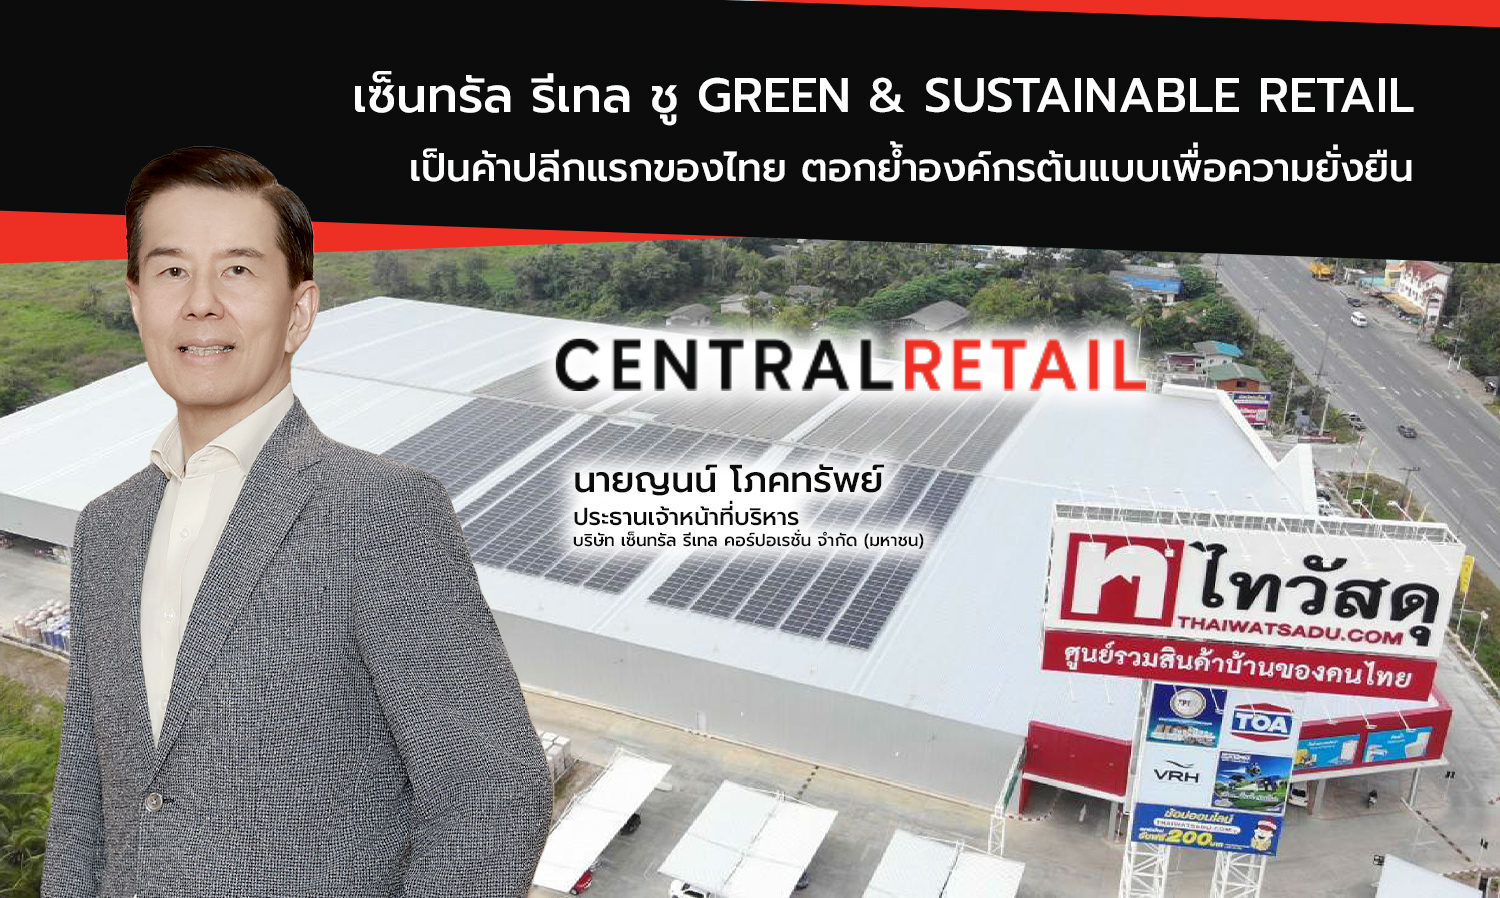 เซ็นทรัล รีเทล ชู Green & Sustainable Retail เป็นค้าปลีกแรกของไทย ตอกย้ำองค์กรต้นแบบเพื่อความยั่งยืน